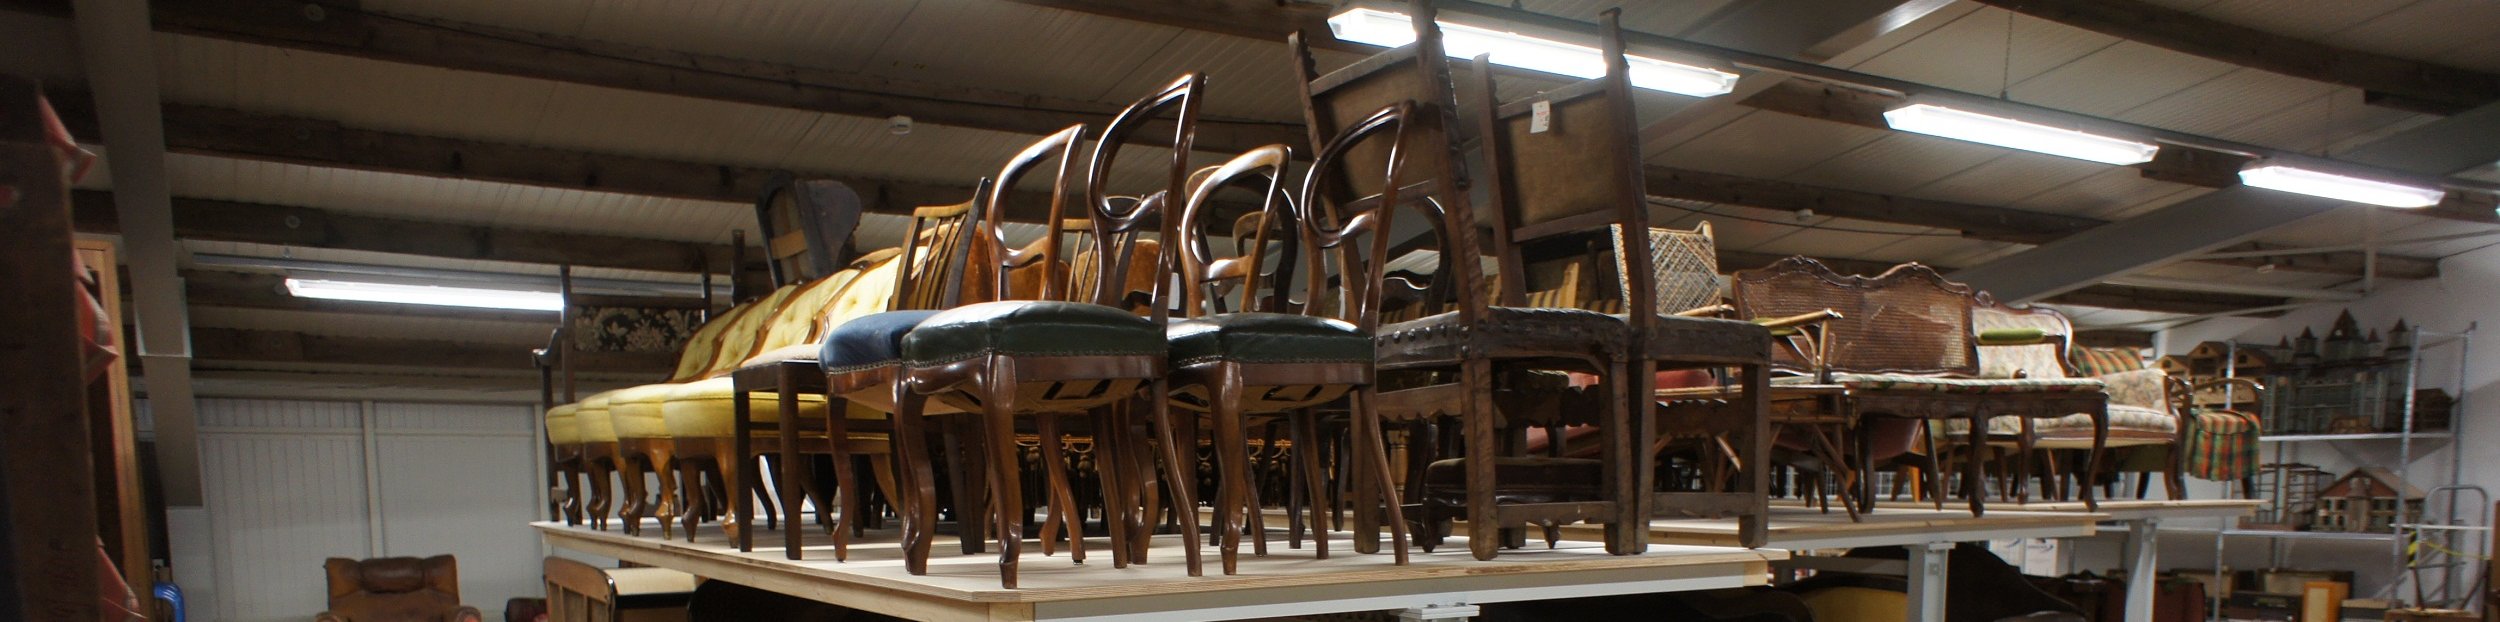 Fotoaufnahme vom Inneren des Möbeldepots. Auf den Platten von mehreren übergroßen Tischen befinden sich etliche Stühle. Unter den Tischen stehen Sessel und Sofas auf Transportroller. An den Wänden im Hintergrund sind Regale mit Objekten erkennbar. 